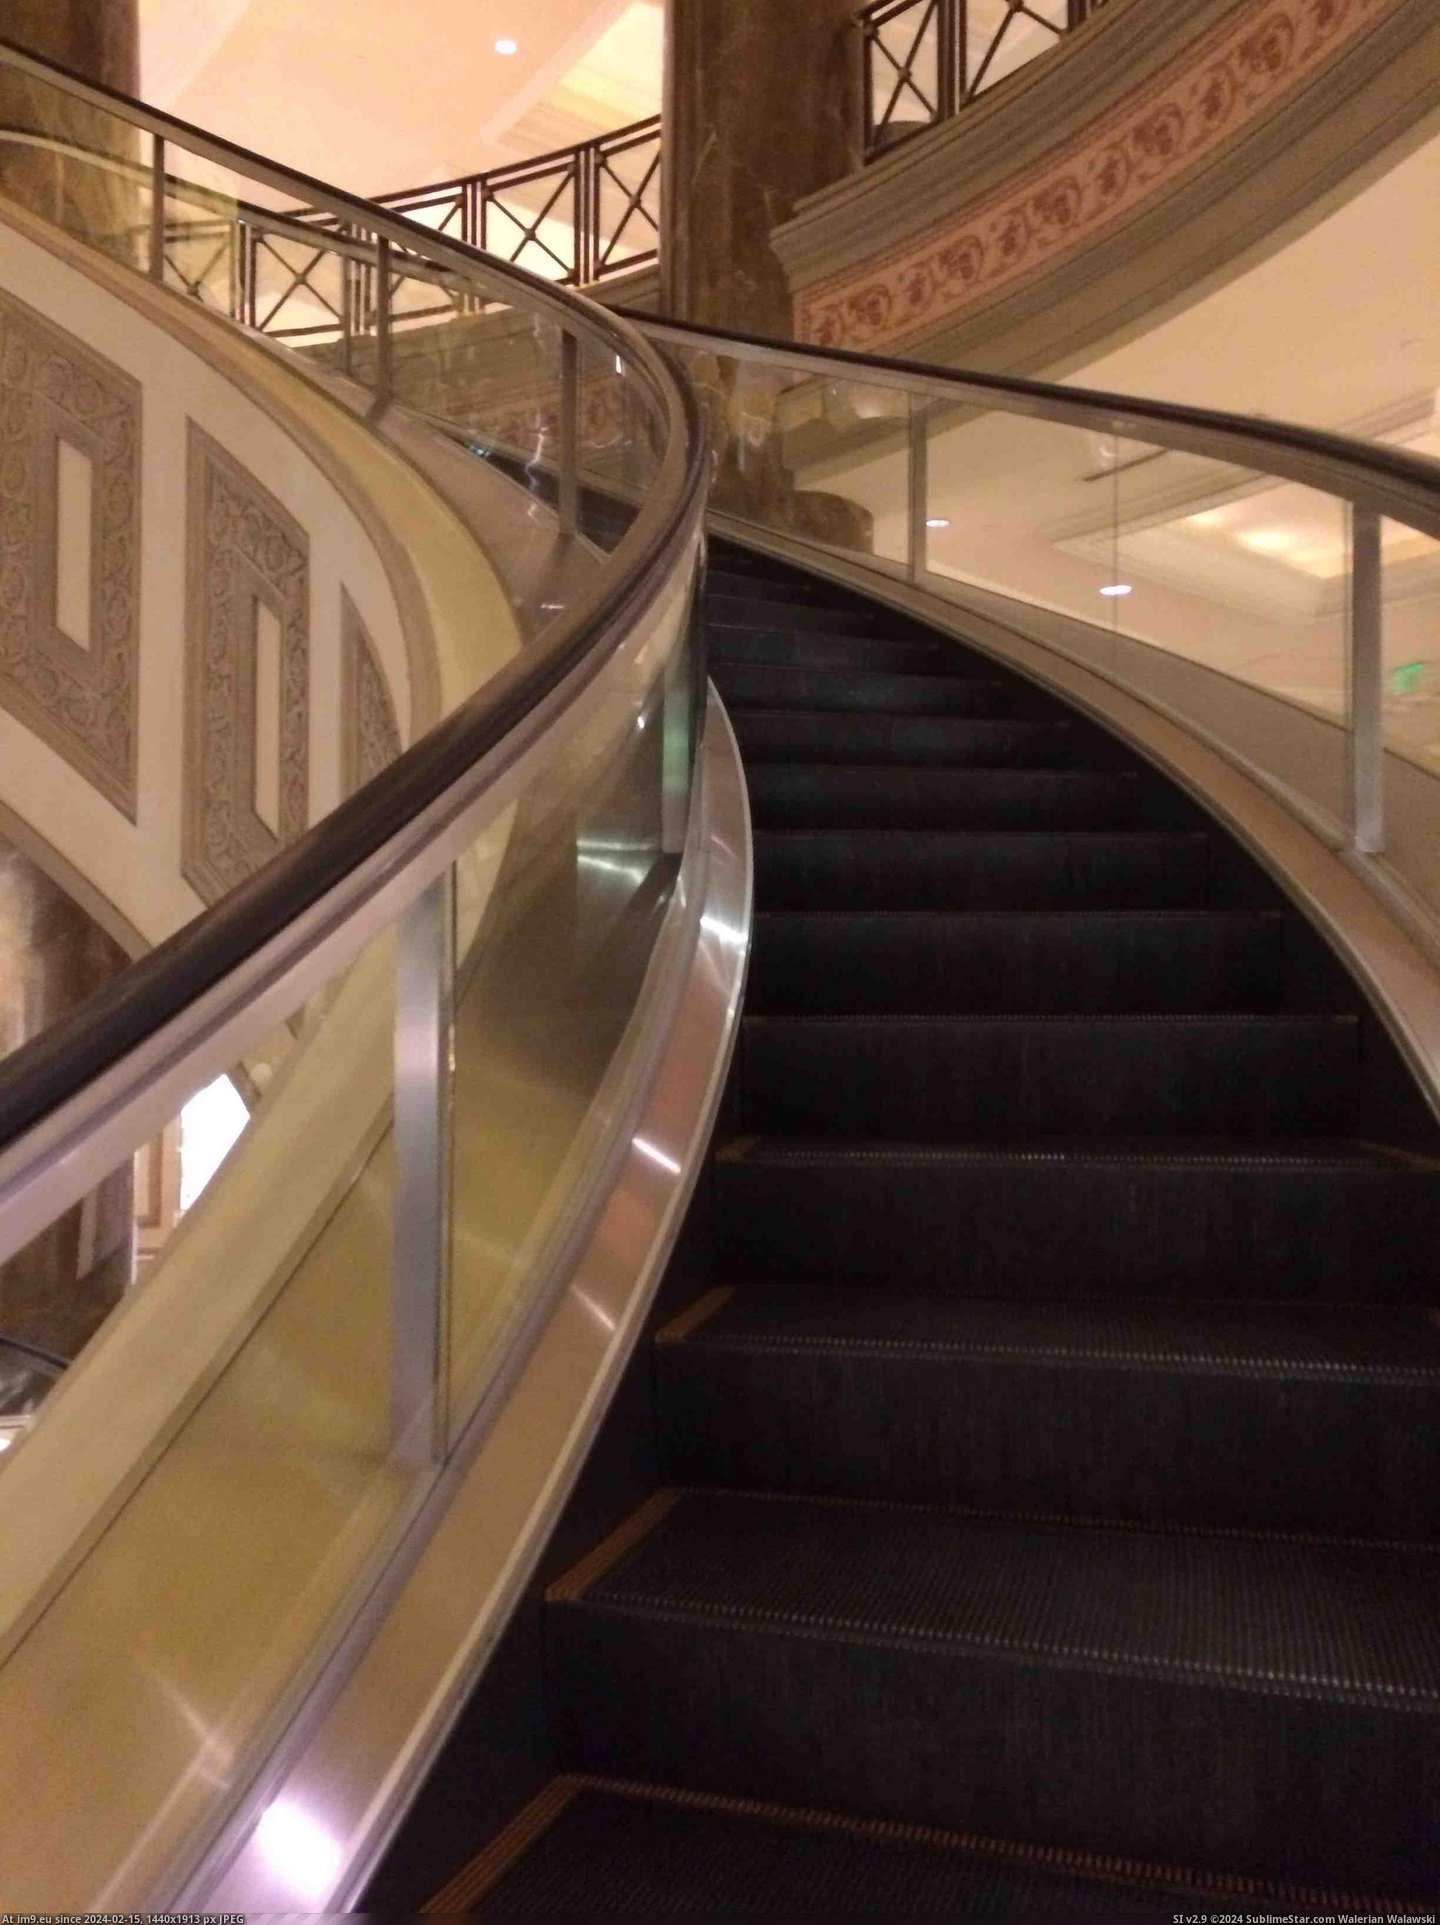 #Hotel #Escalators #Spiral [Mildlyinteresting] My hotel has spiral escalators Pic. (Obraz z album My r/MILDLYINTERESTING favs))